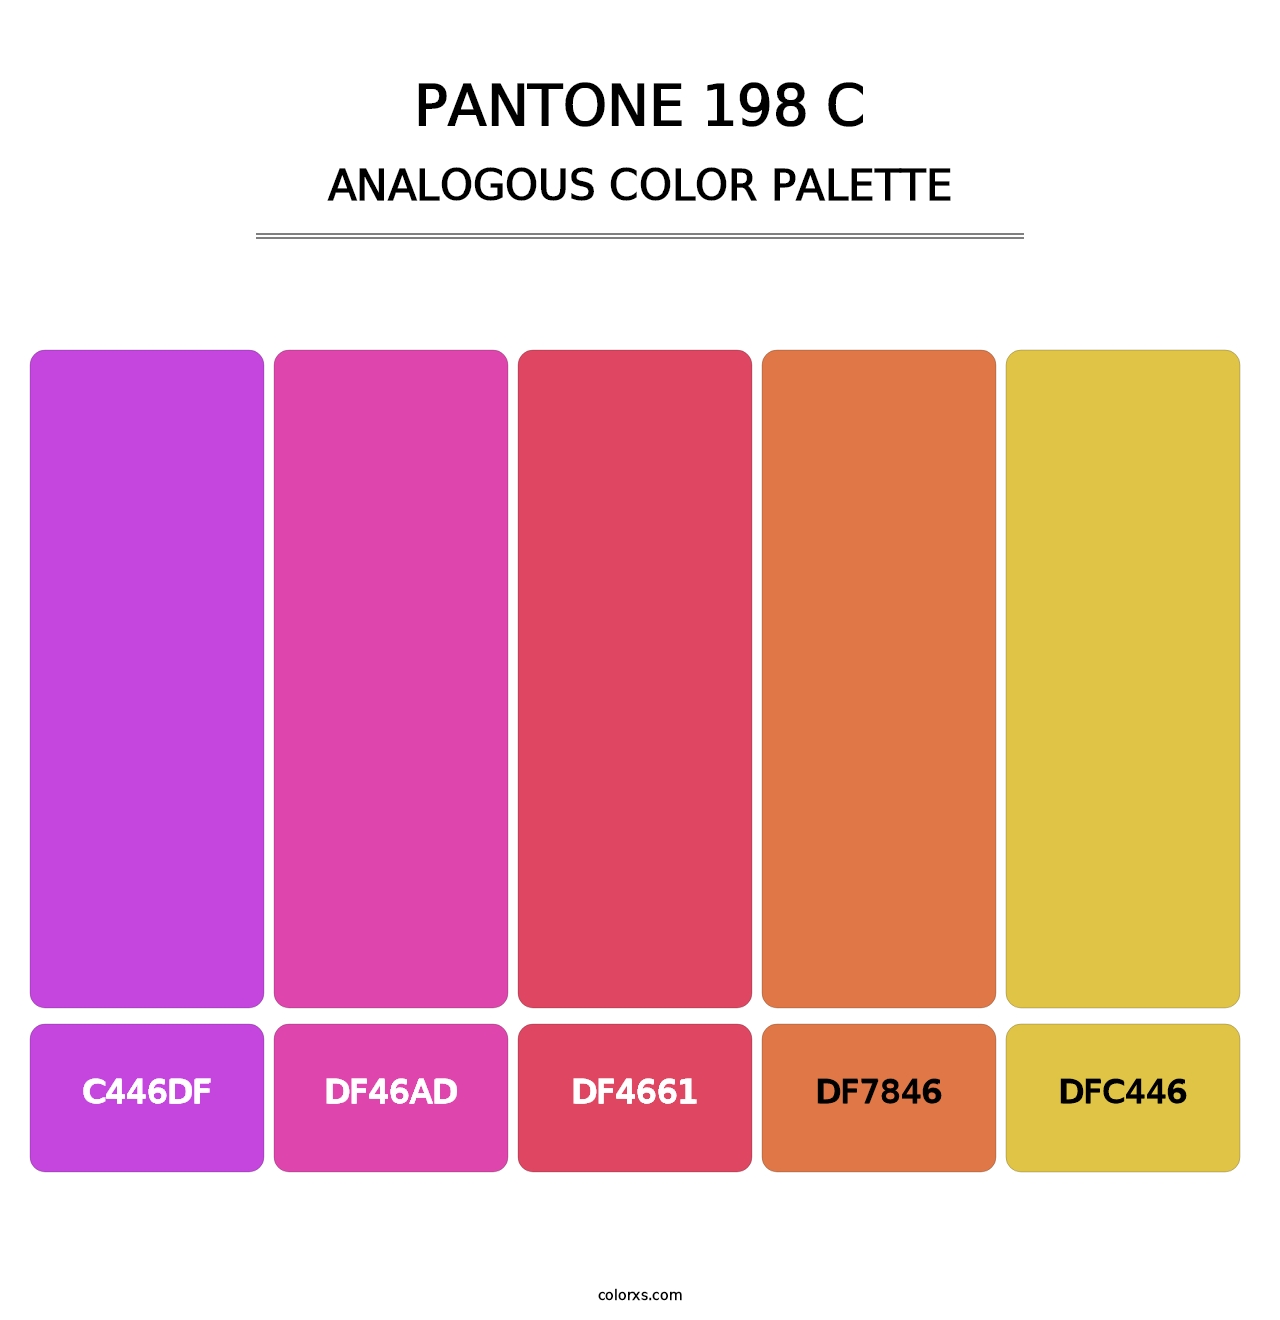 PANTONE 198 C - Analogous Color Palette